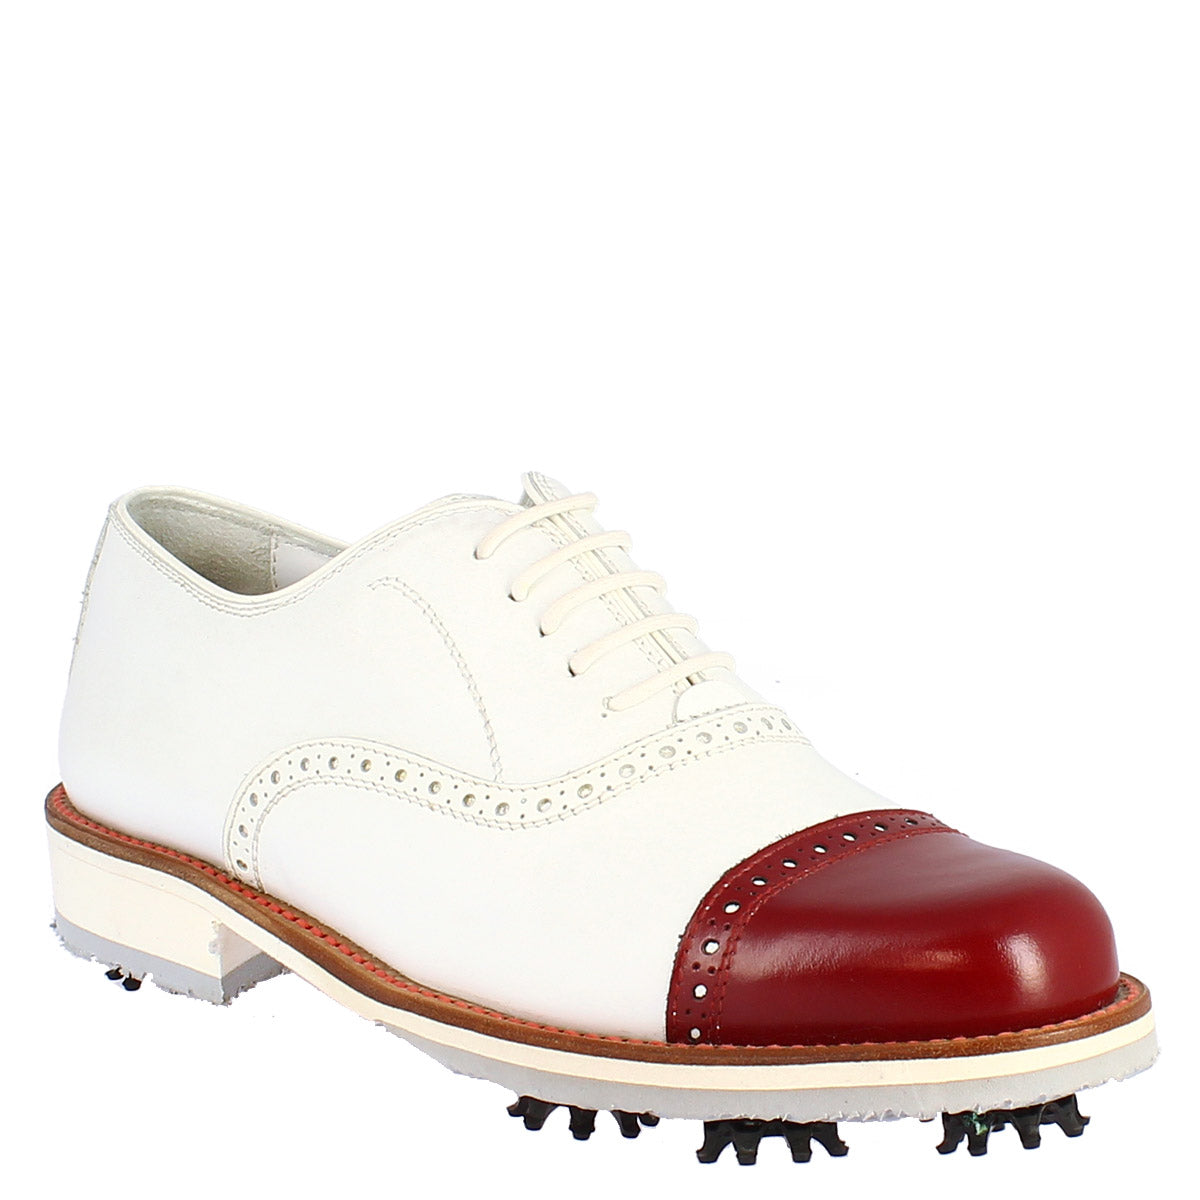 Scarpe golf uomo artigianali in pelle bianco con puntale rosso